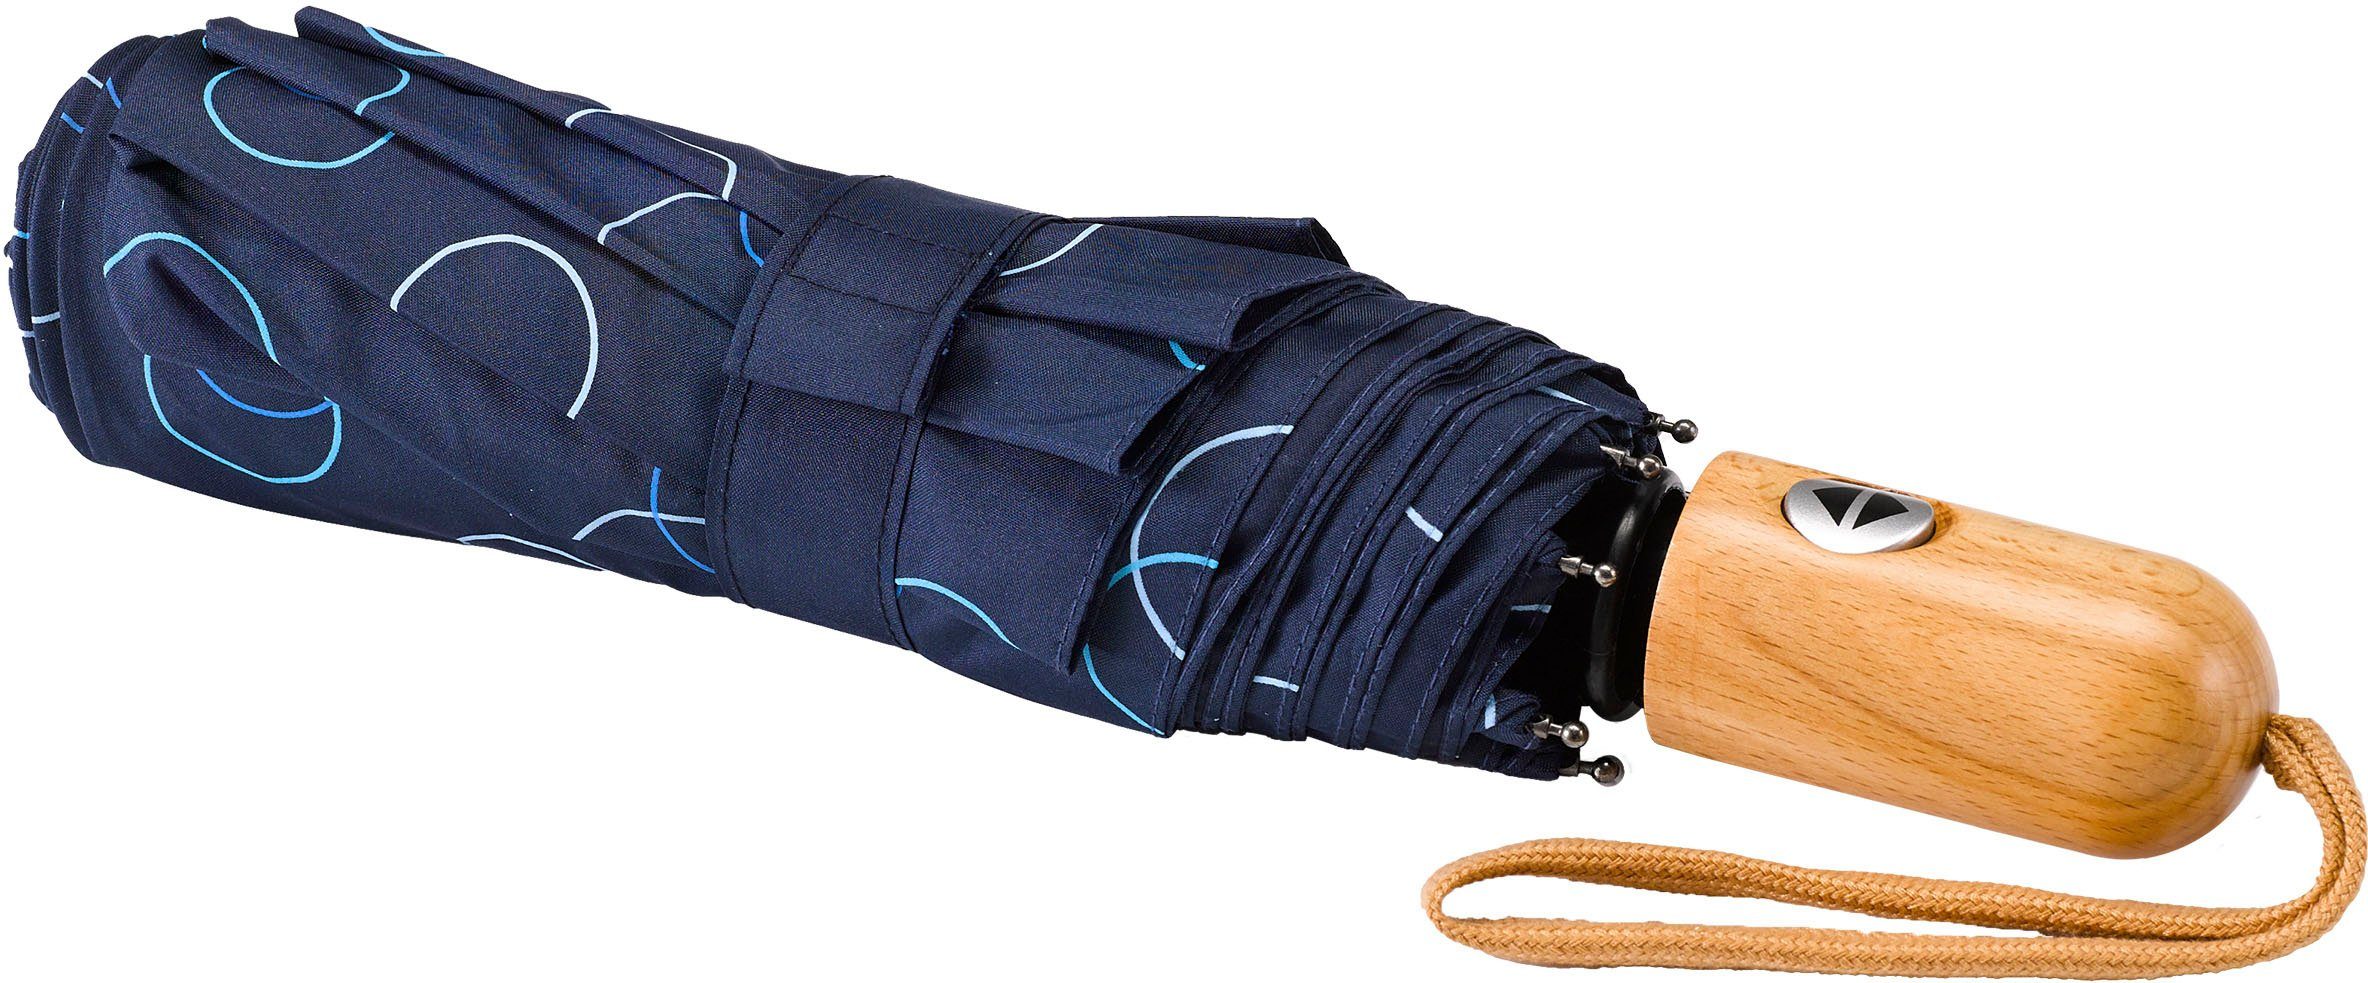 EuroSCHIRM® blau marine, Umwelt-Taschenschirm, Kreise Taschenregenschirm